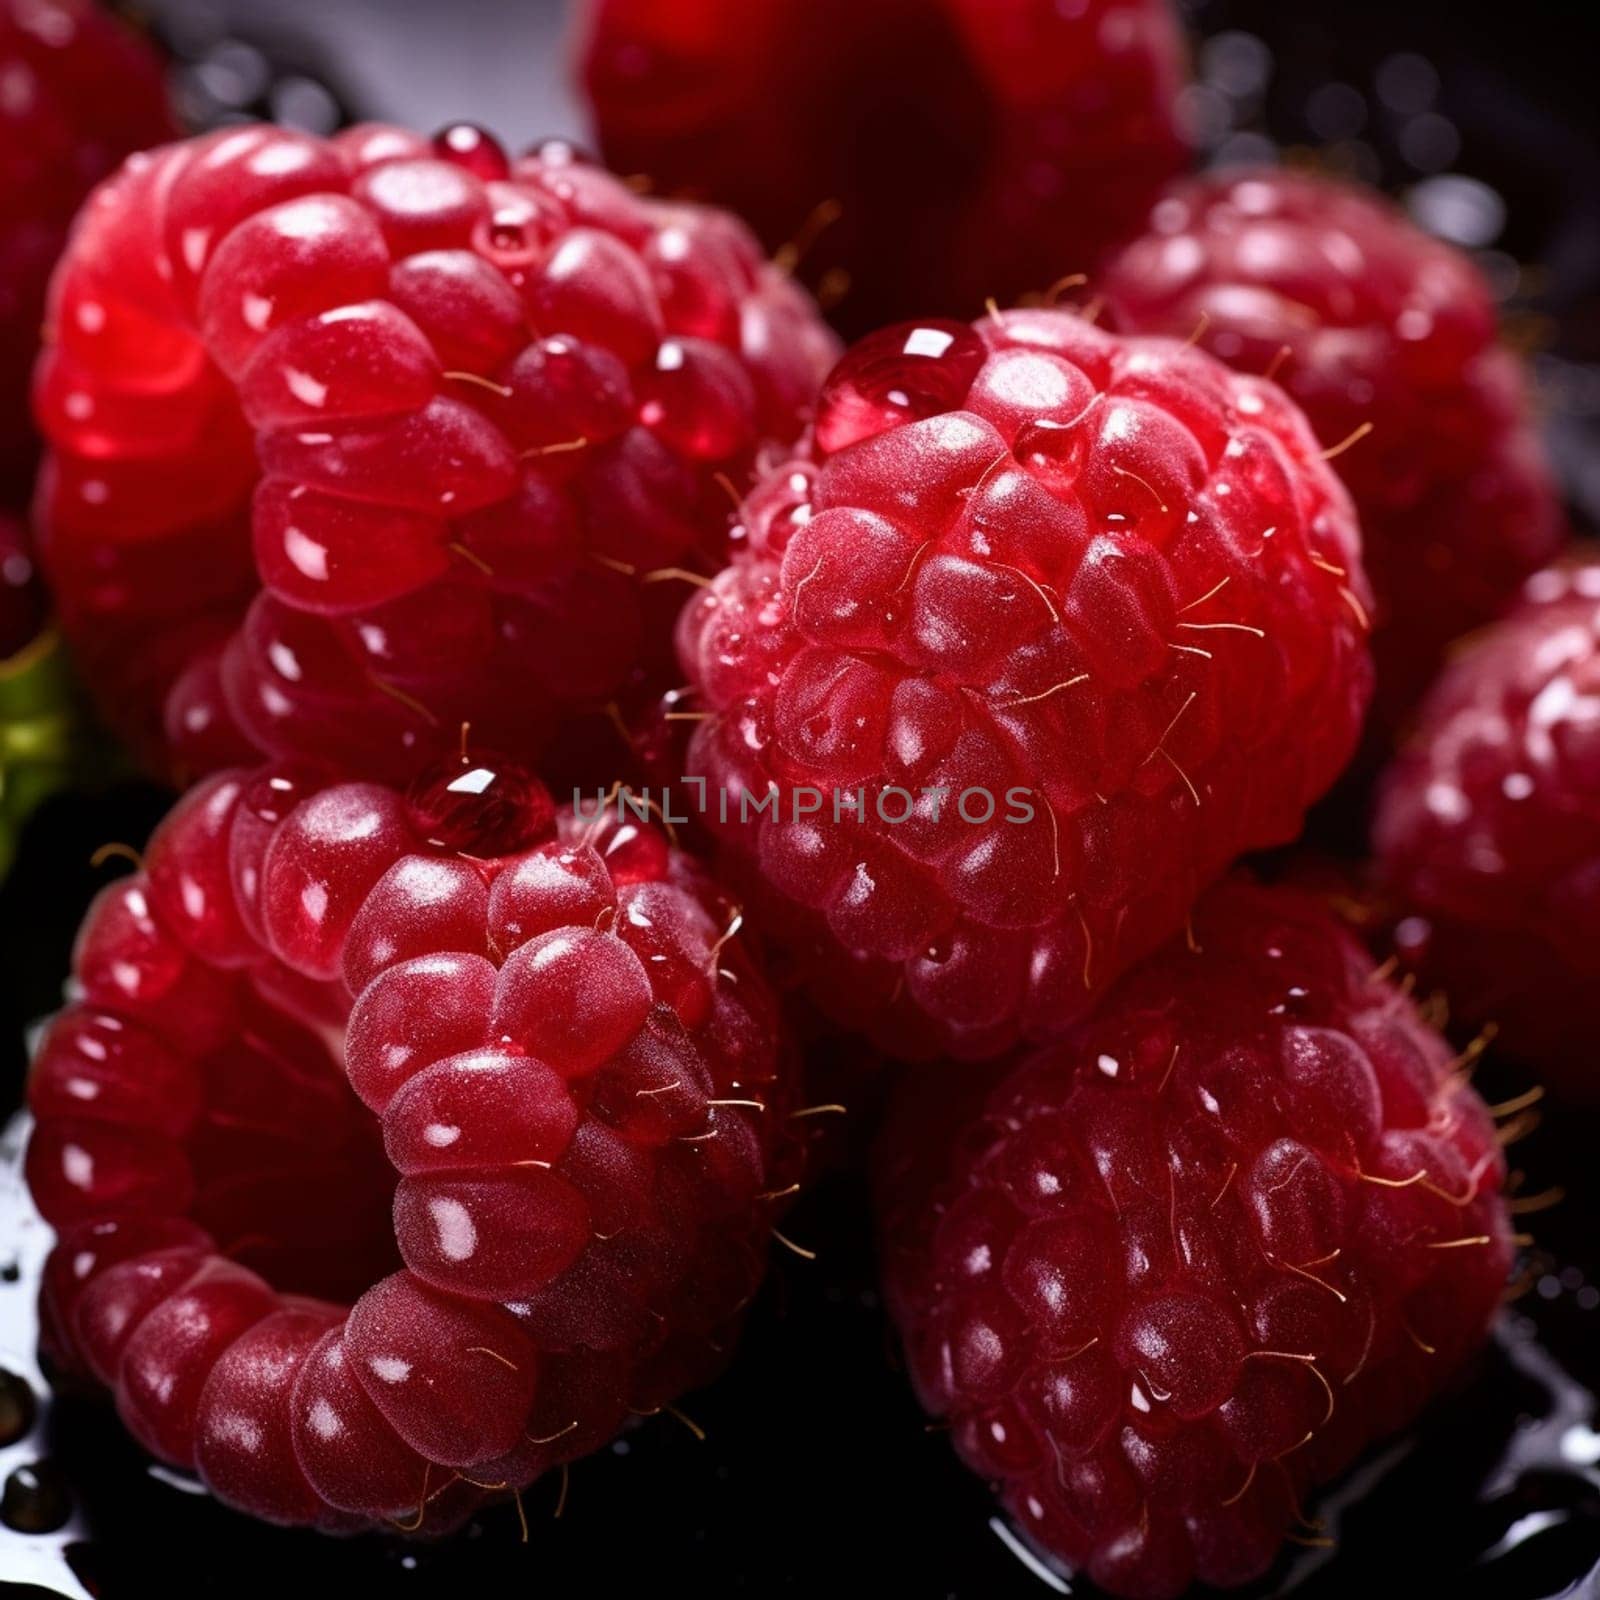 Juicy raspberries macro photography by ekaterinabyuksel